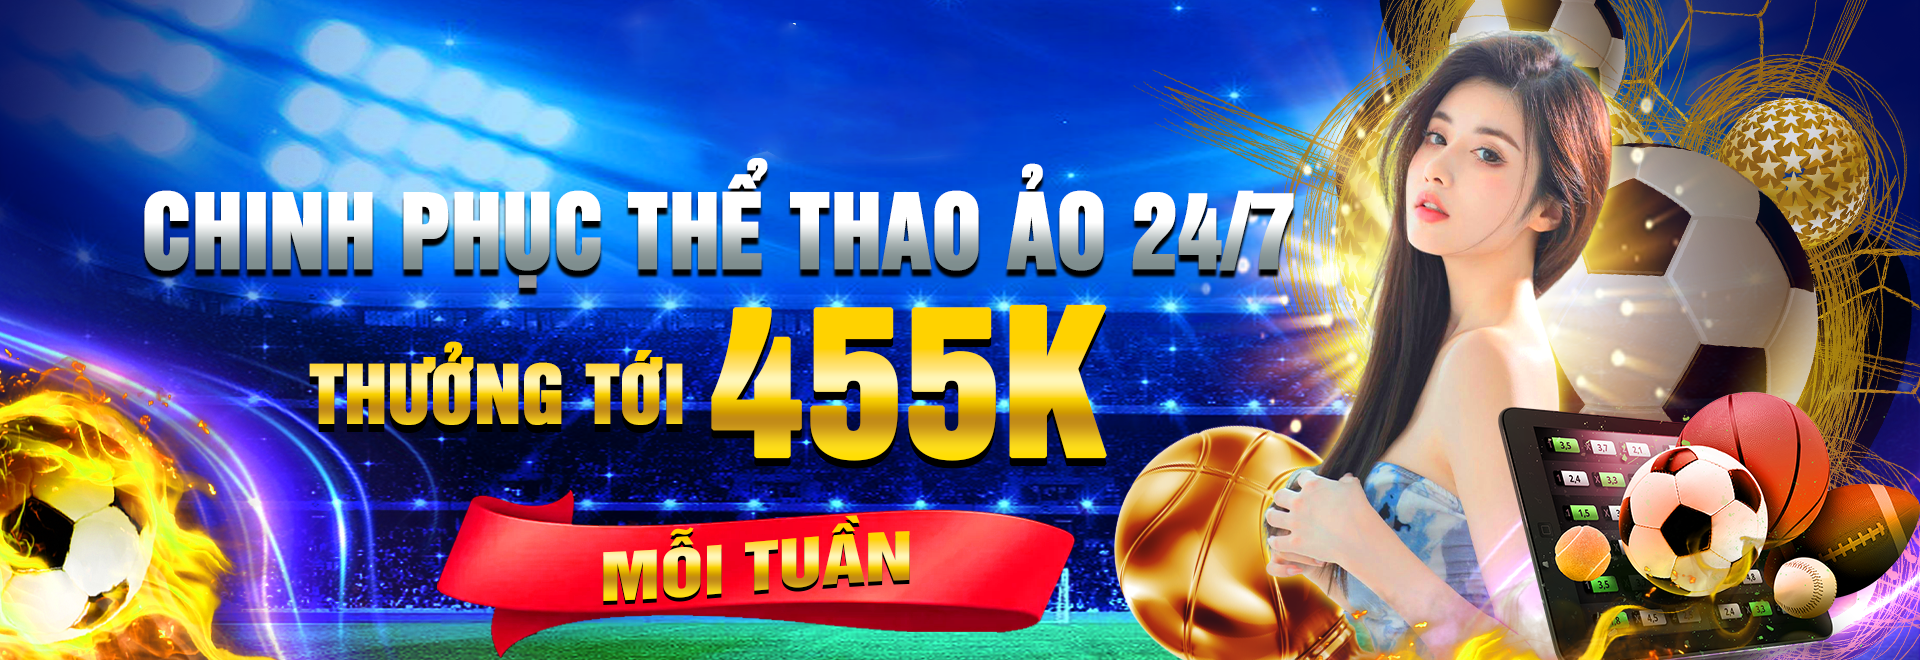 2 CHINH PHUC THE THAO AO 247 THUONG TOI 455K MOI TUAN